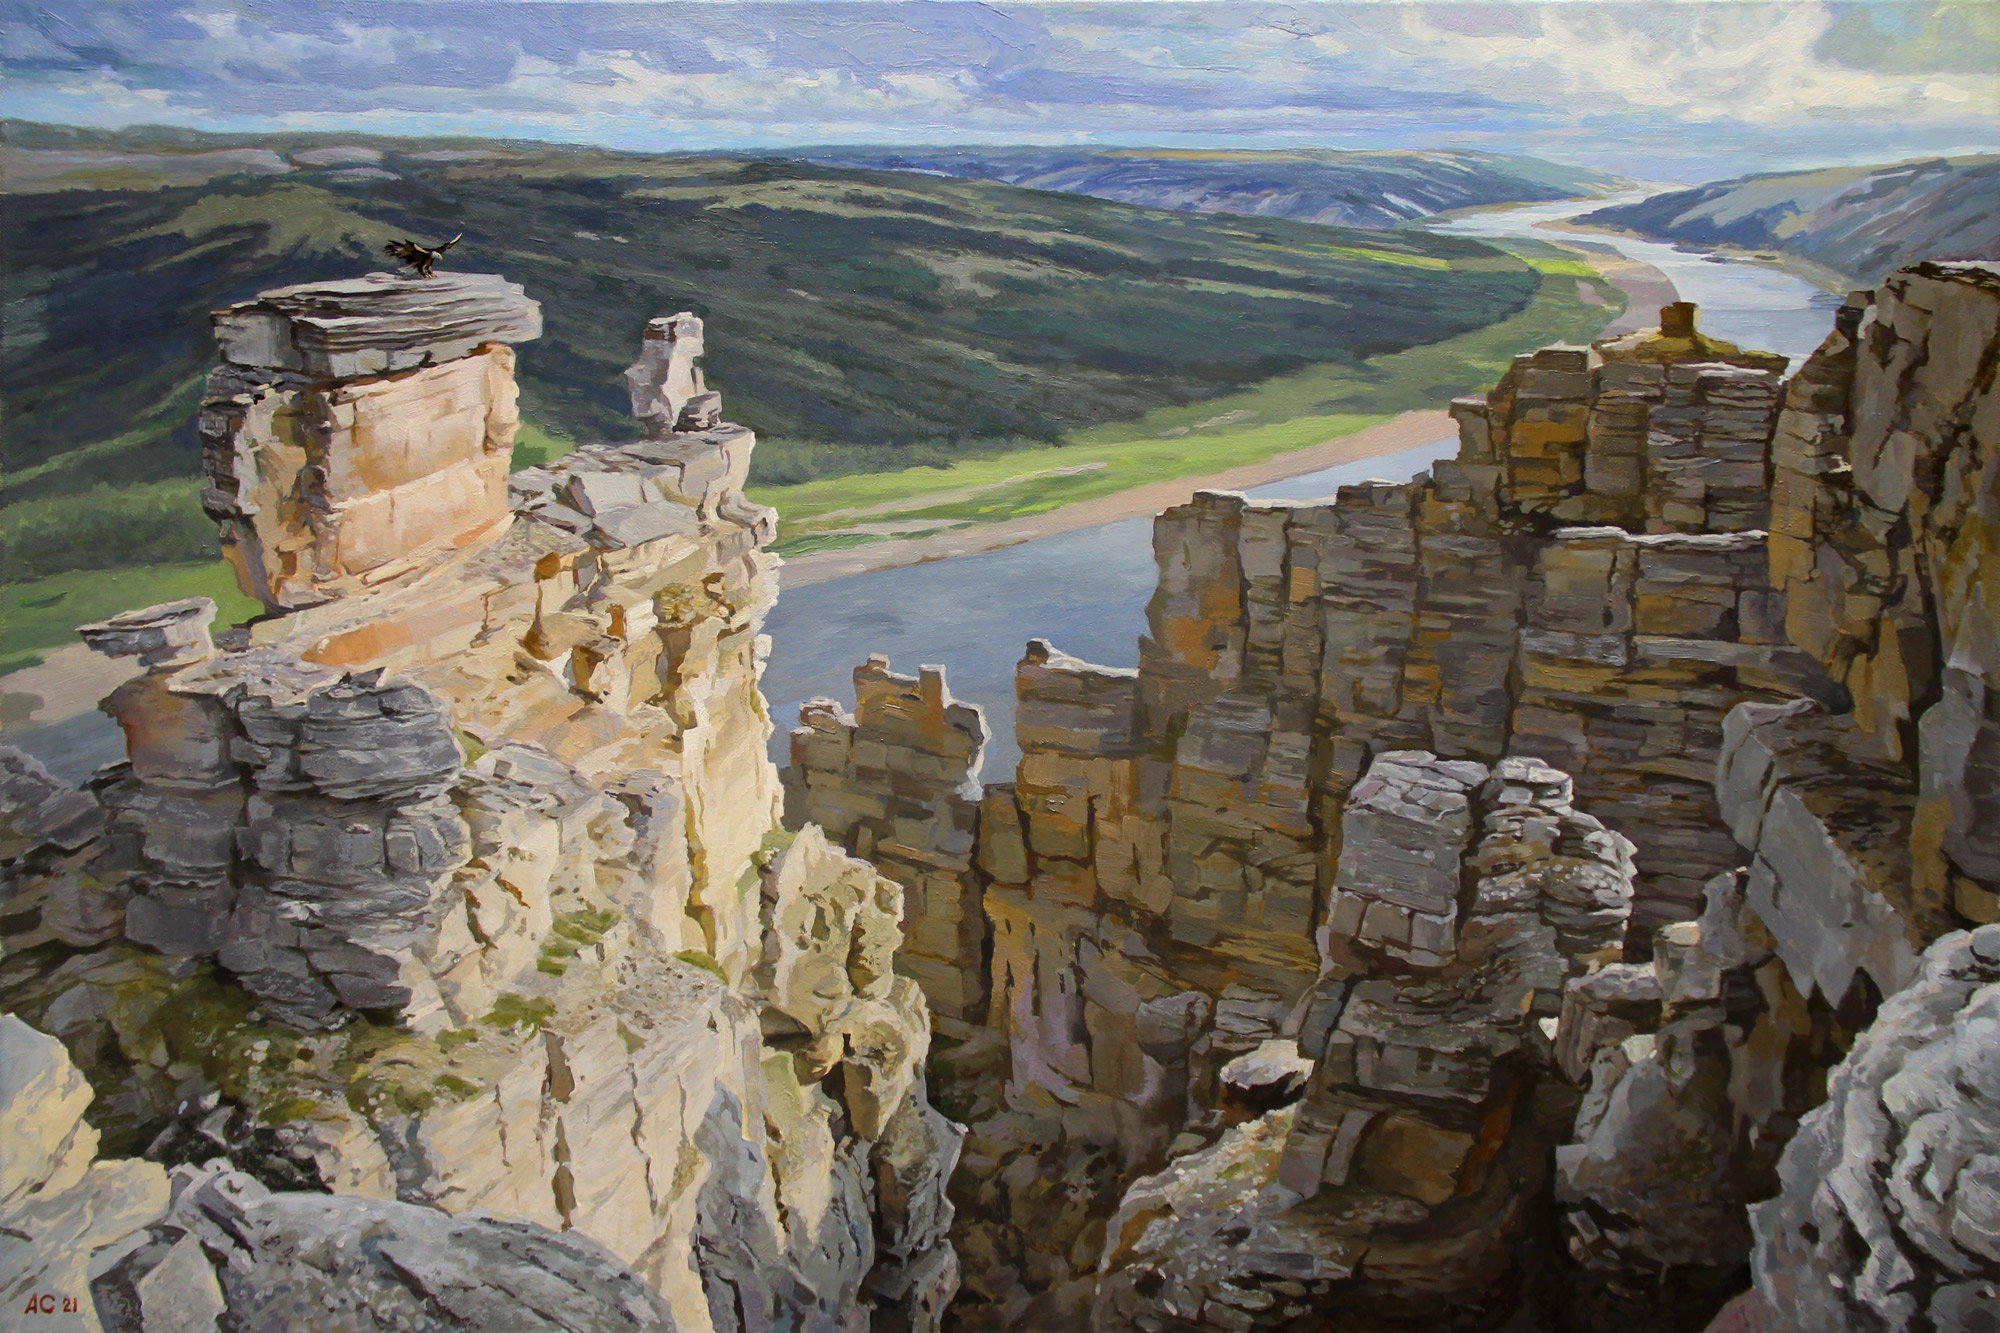 Above the valleys - 1, Alexander Samokhvalov, Buy the painting Oil